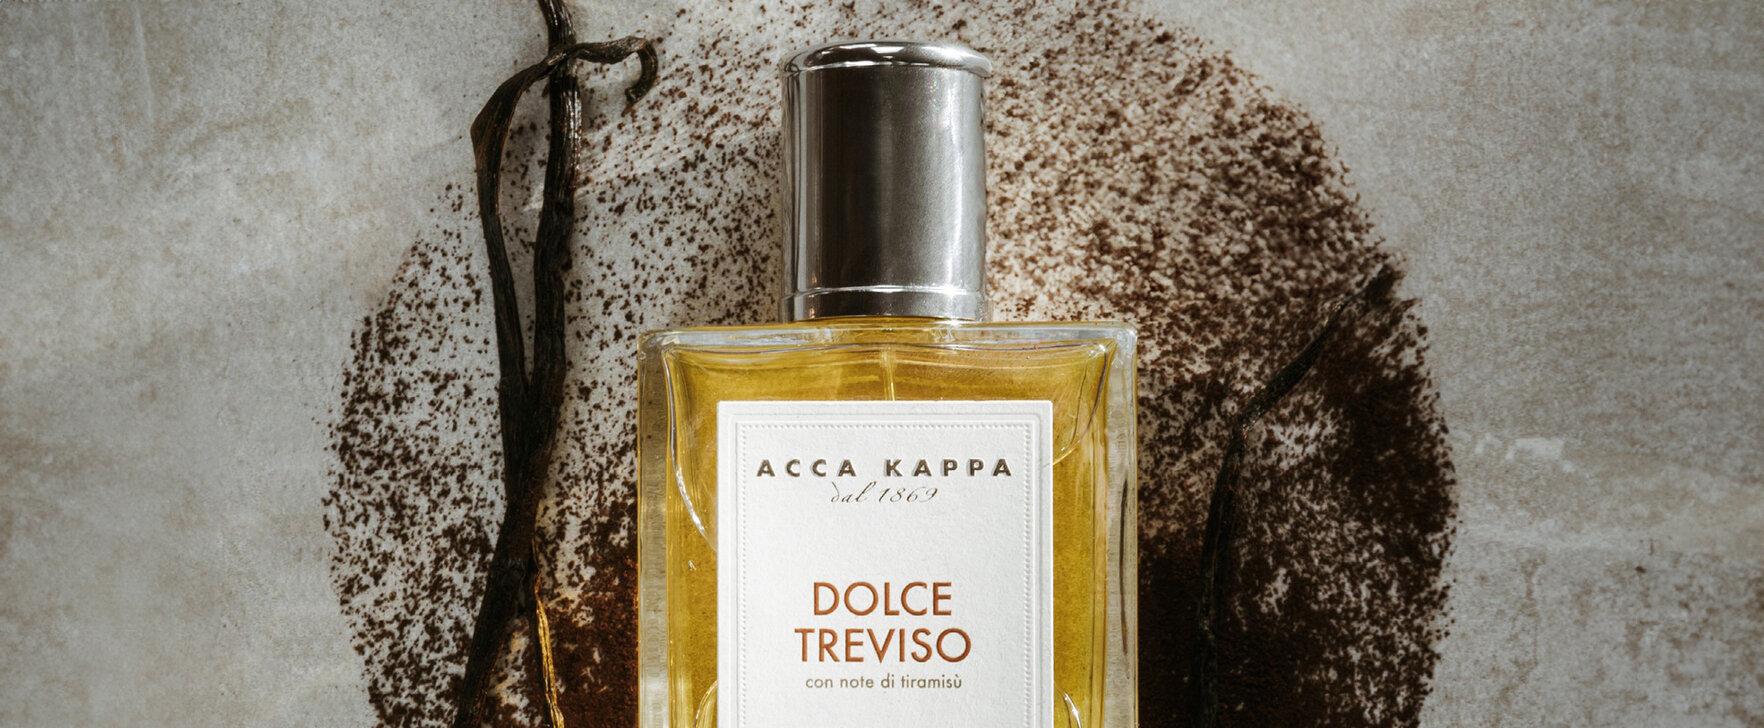 Eine Duftreise nach Treviso: Das neue Eau de Parfum „Dolce Treviso“ von Acca Kappa